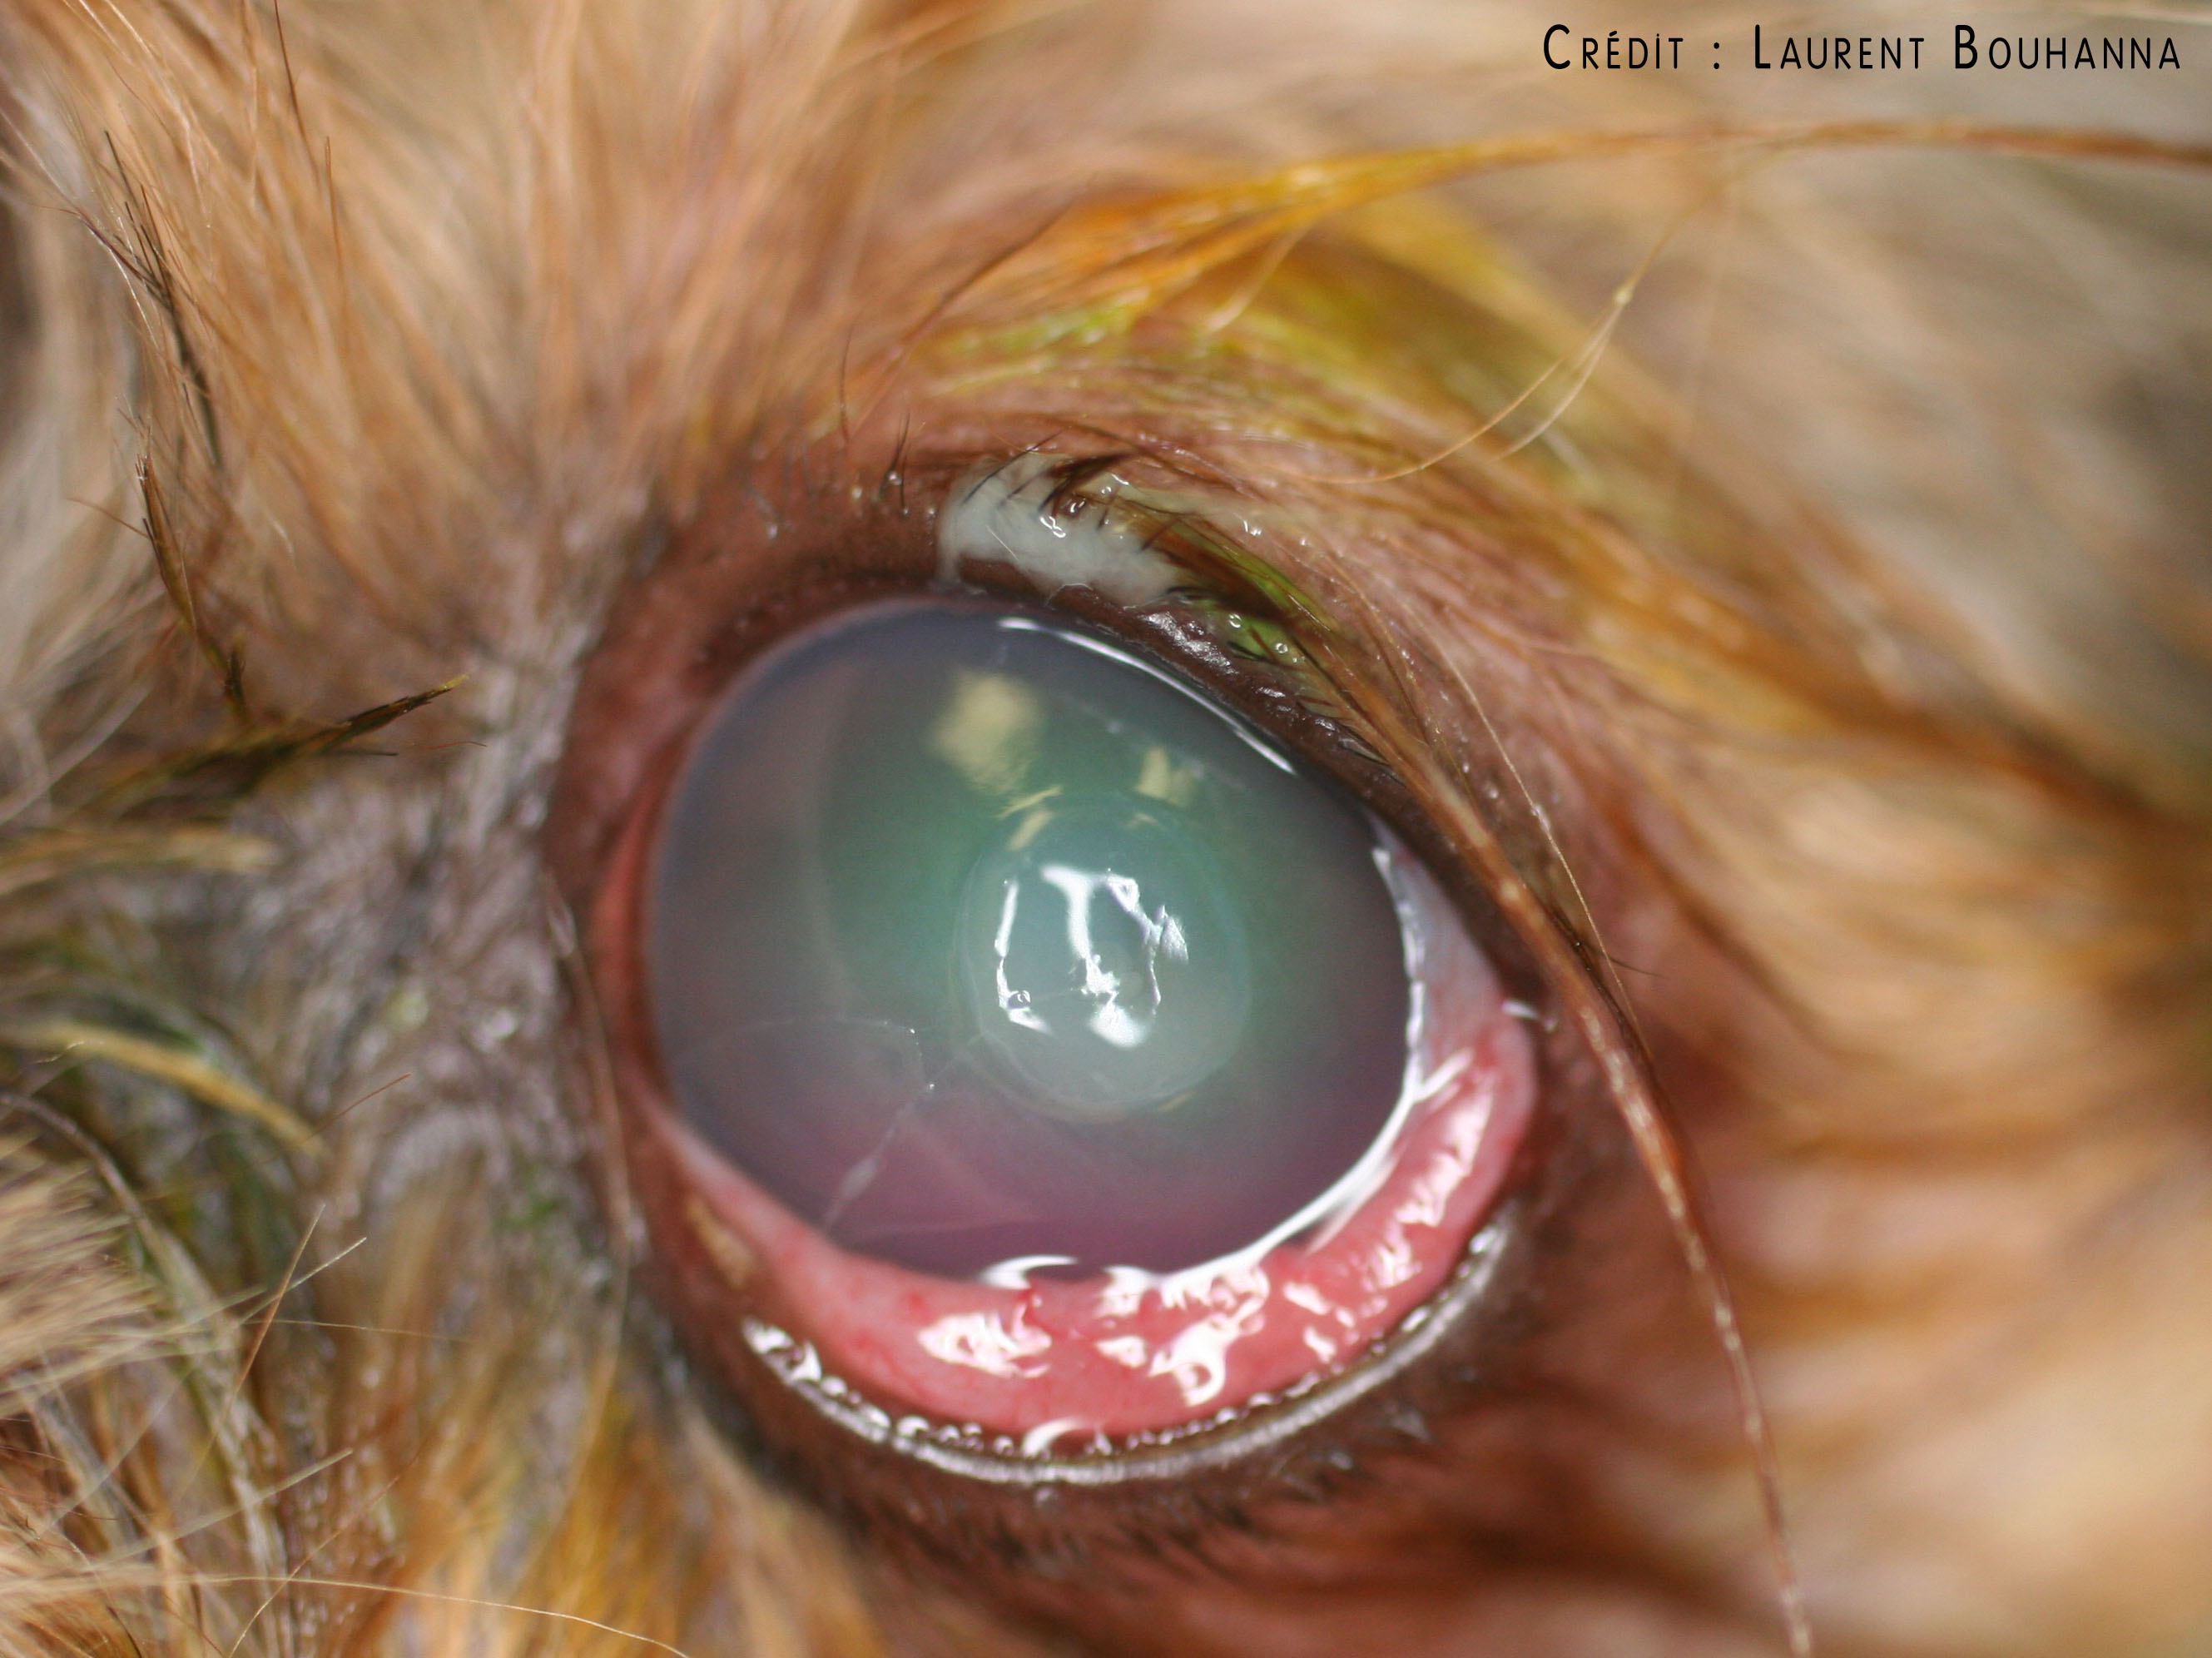 Conjonctivite et chémosis (oedème de la conjonctive) chez un chien, consécutifs à un ulcère de la cornée.